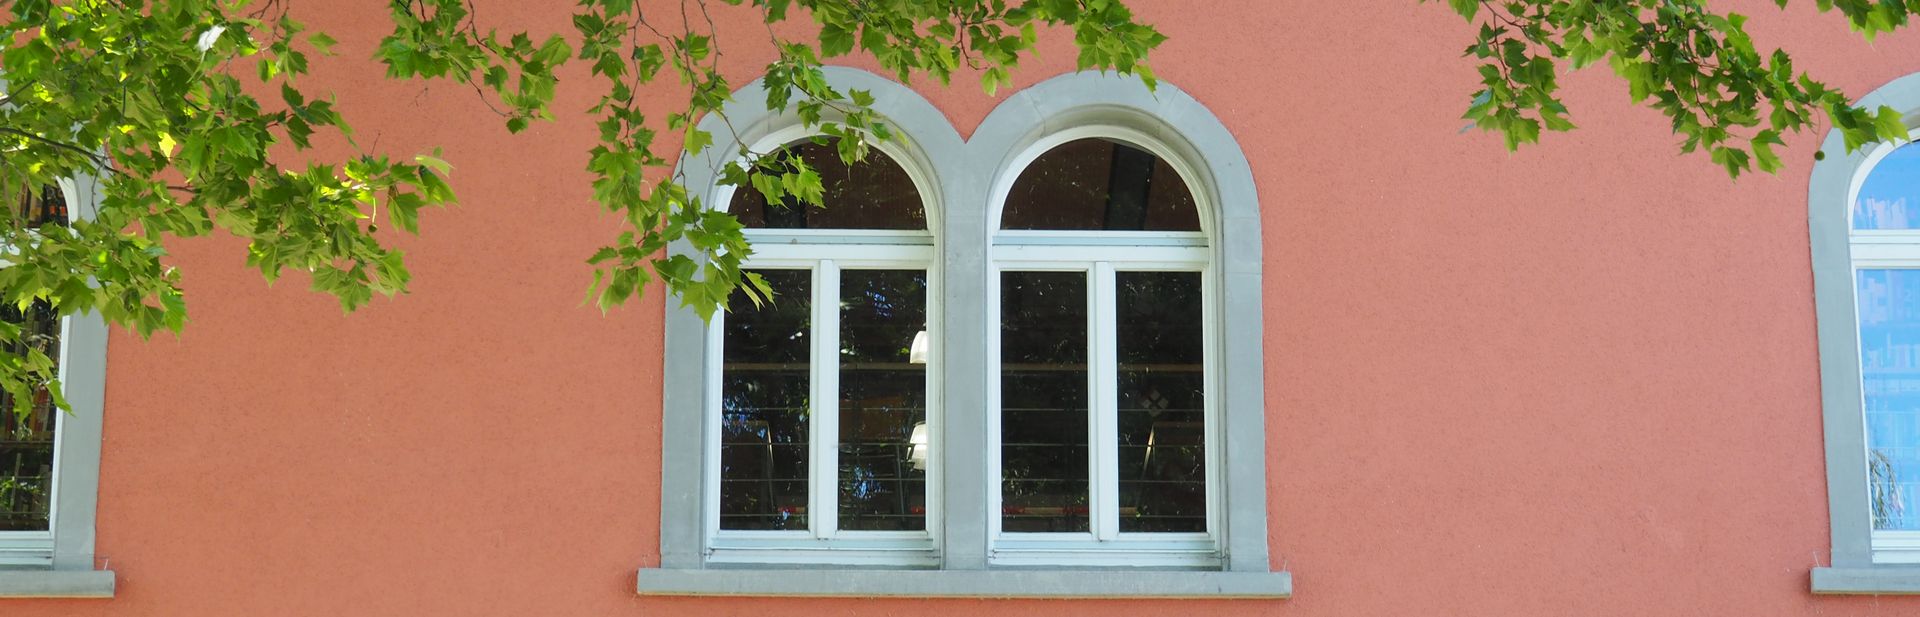 Fenster der Bibliothek Außenaufnahme 